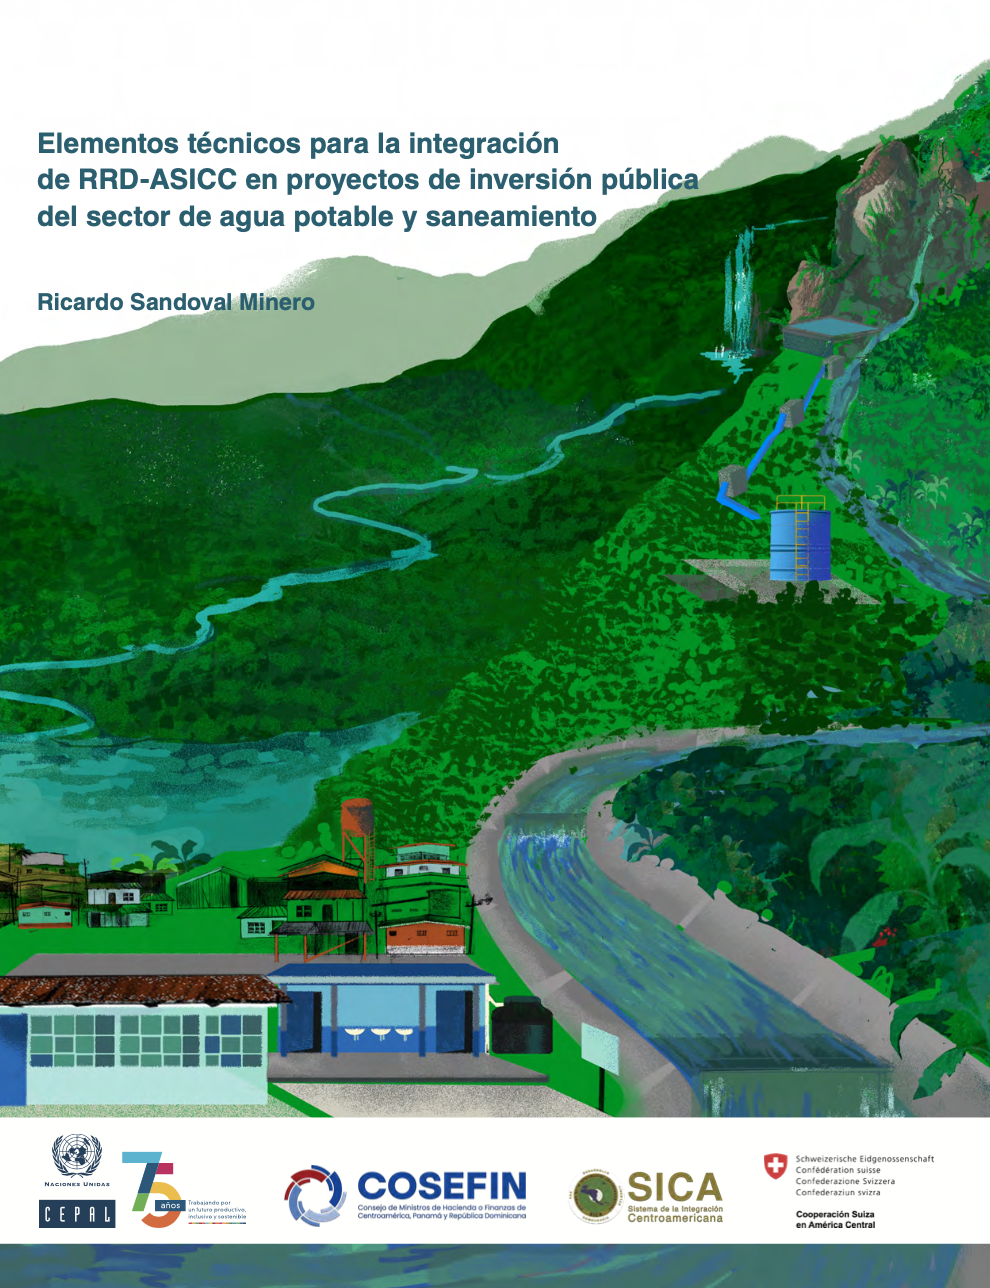 Elementos técnicos para la integración de RRD-ASICC en proyectos de inversión pública del sector de agua potable y saneamiento (CEPAL)